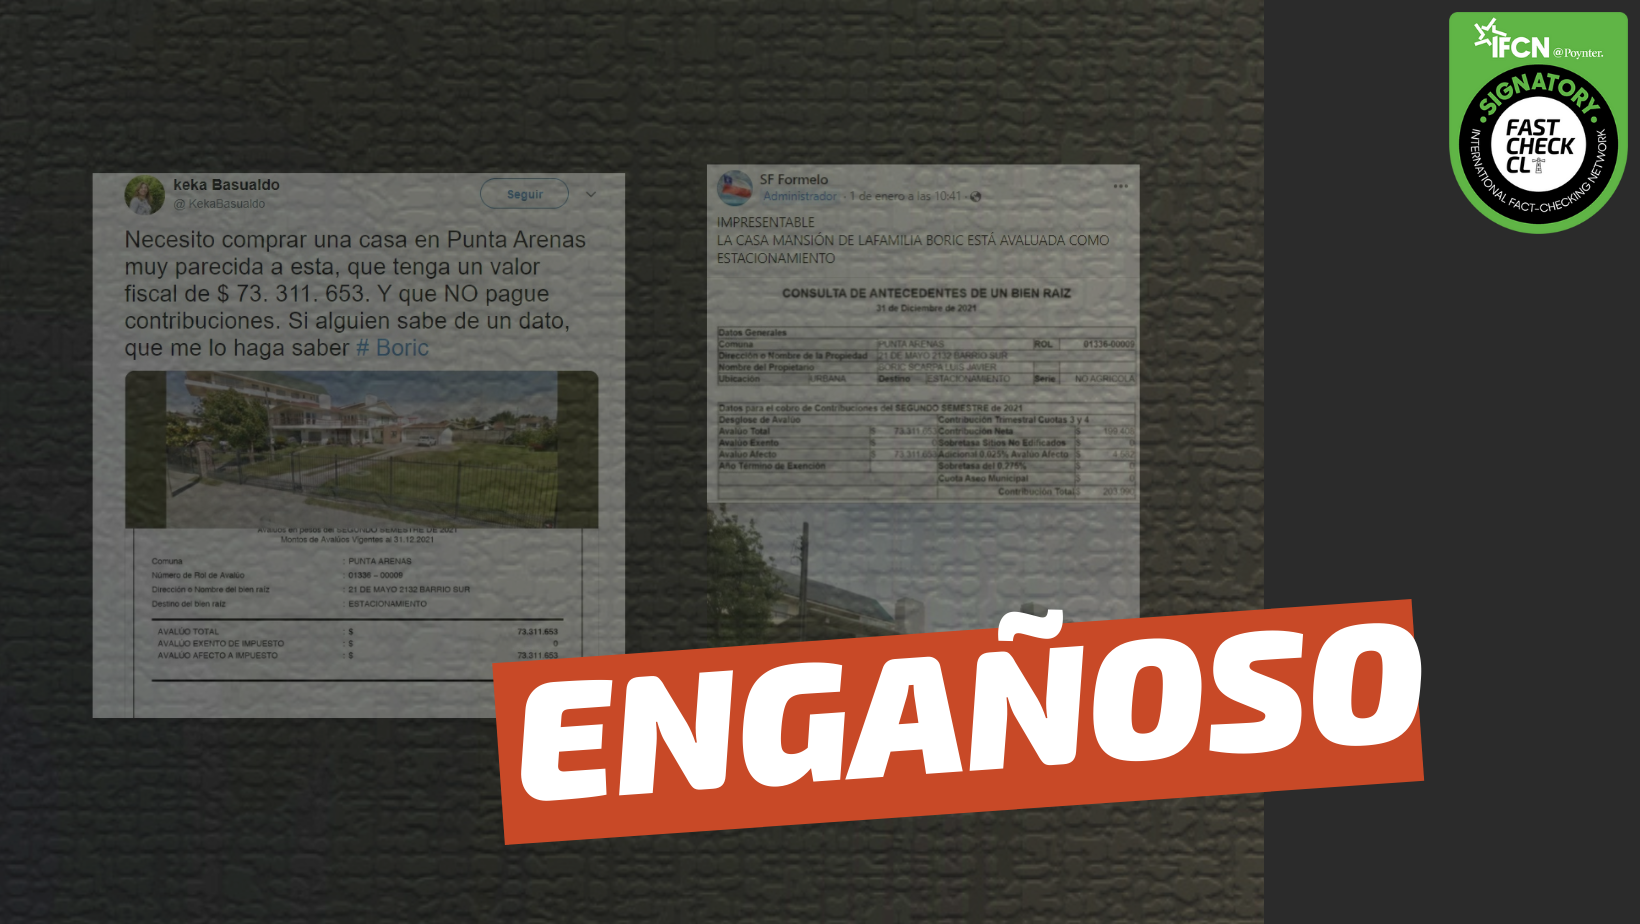 You are currently viewing (Imágenes) “La casa mansión de la familia Boric está avaluada como estacionamiento”: #Engañoso